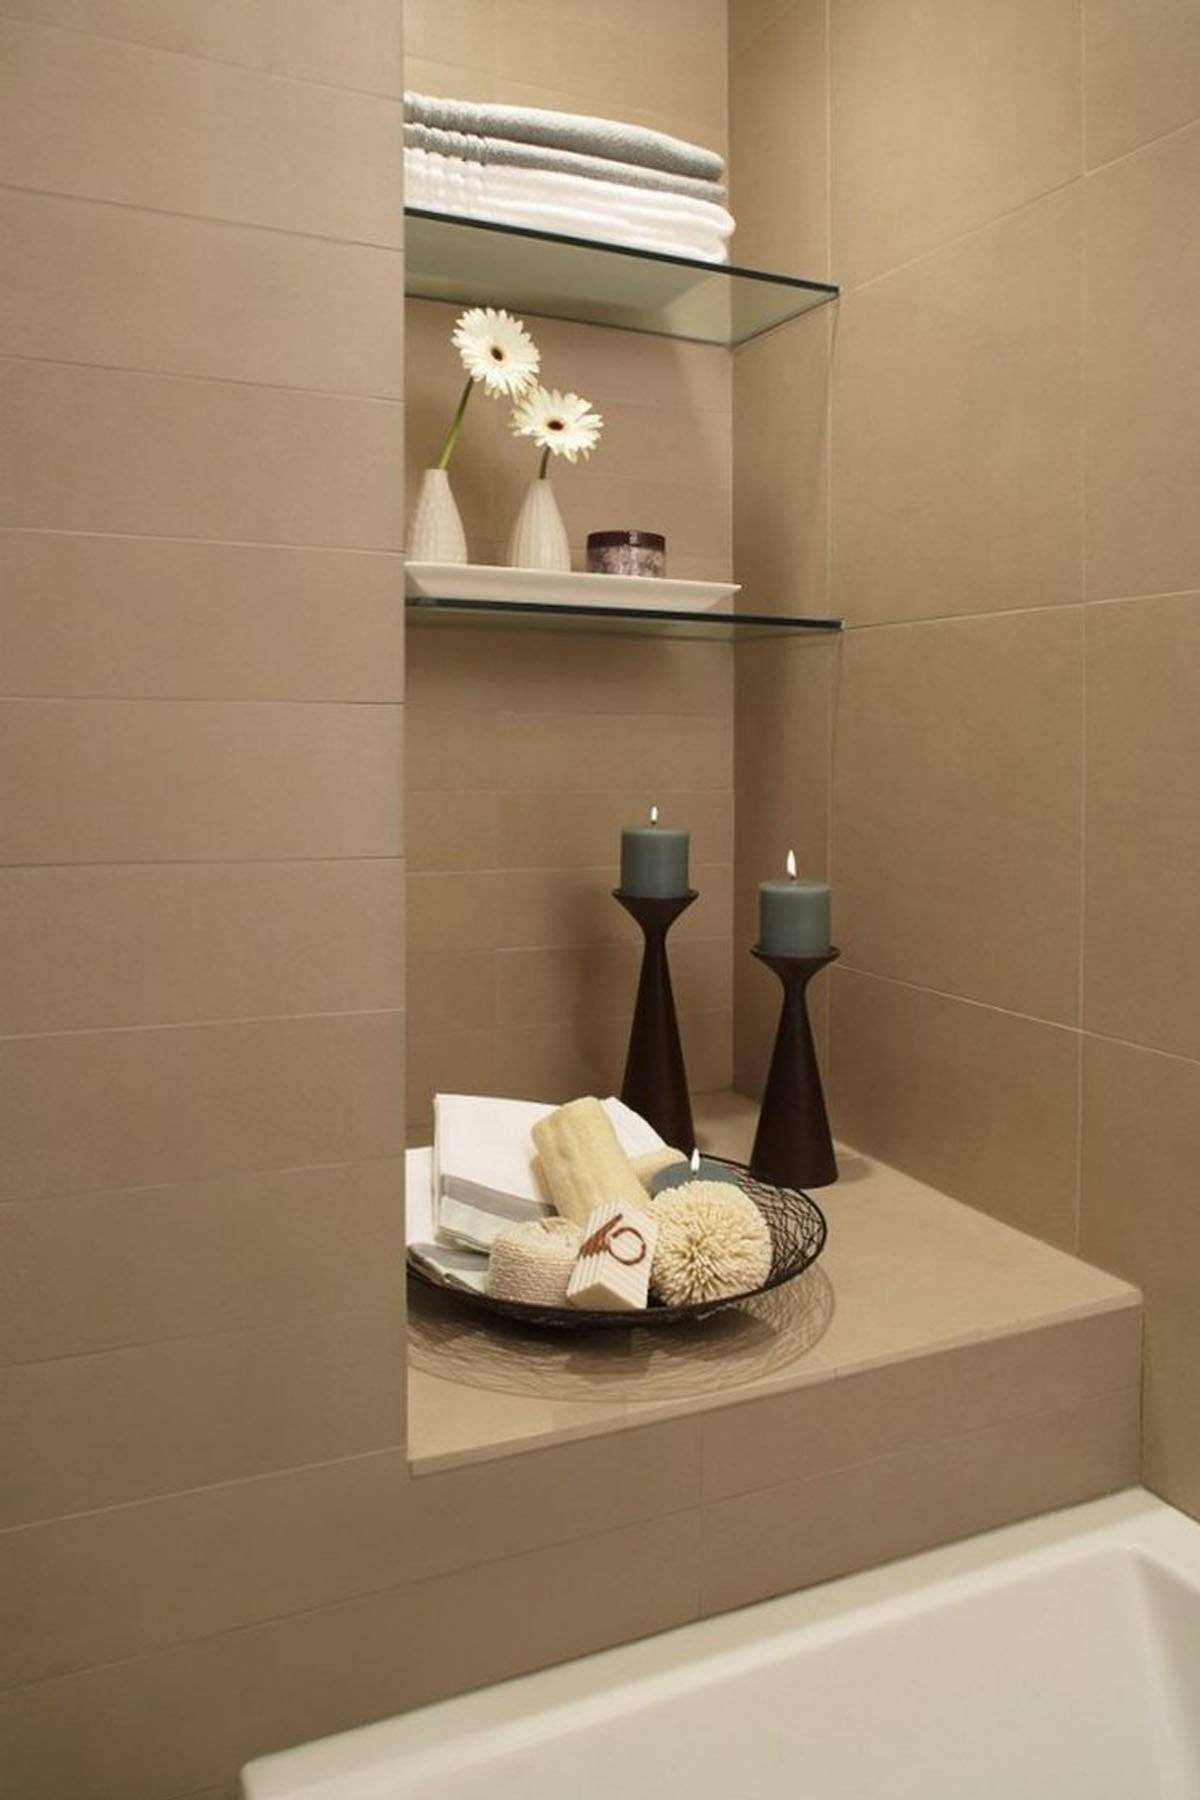 Полки для ванной комнаты - фото лучших новинок в интерьере